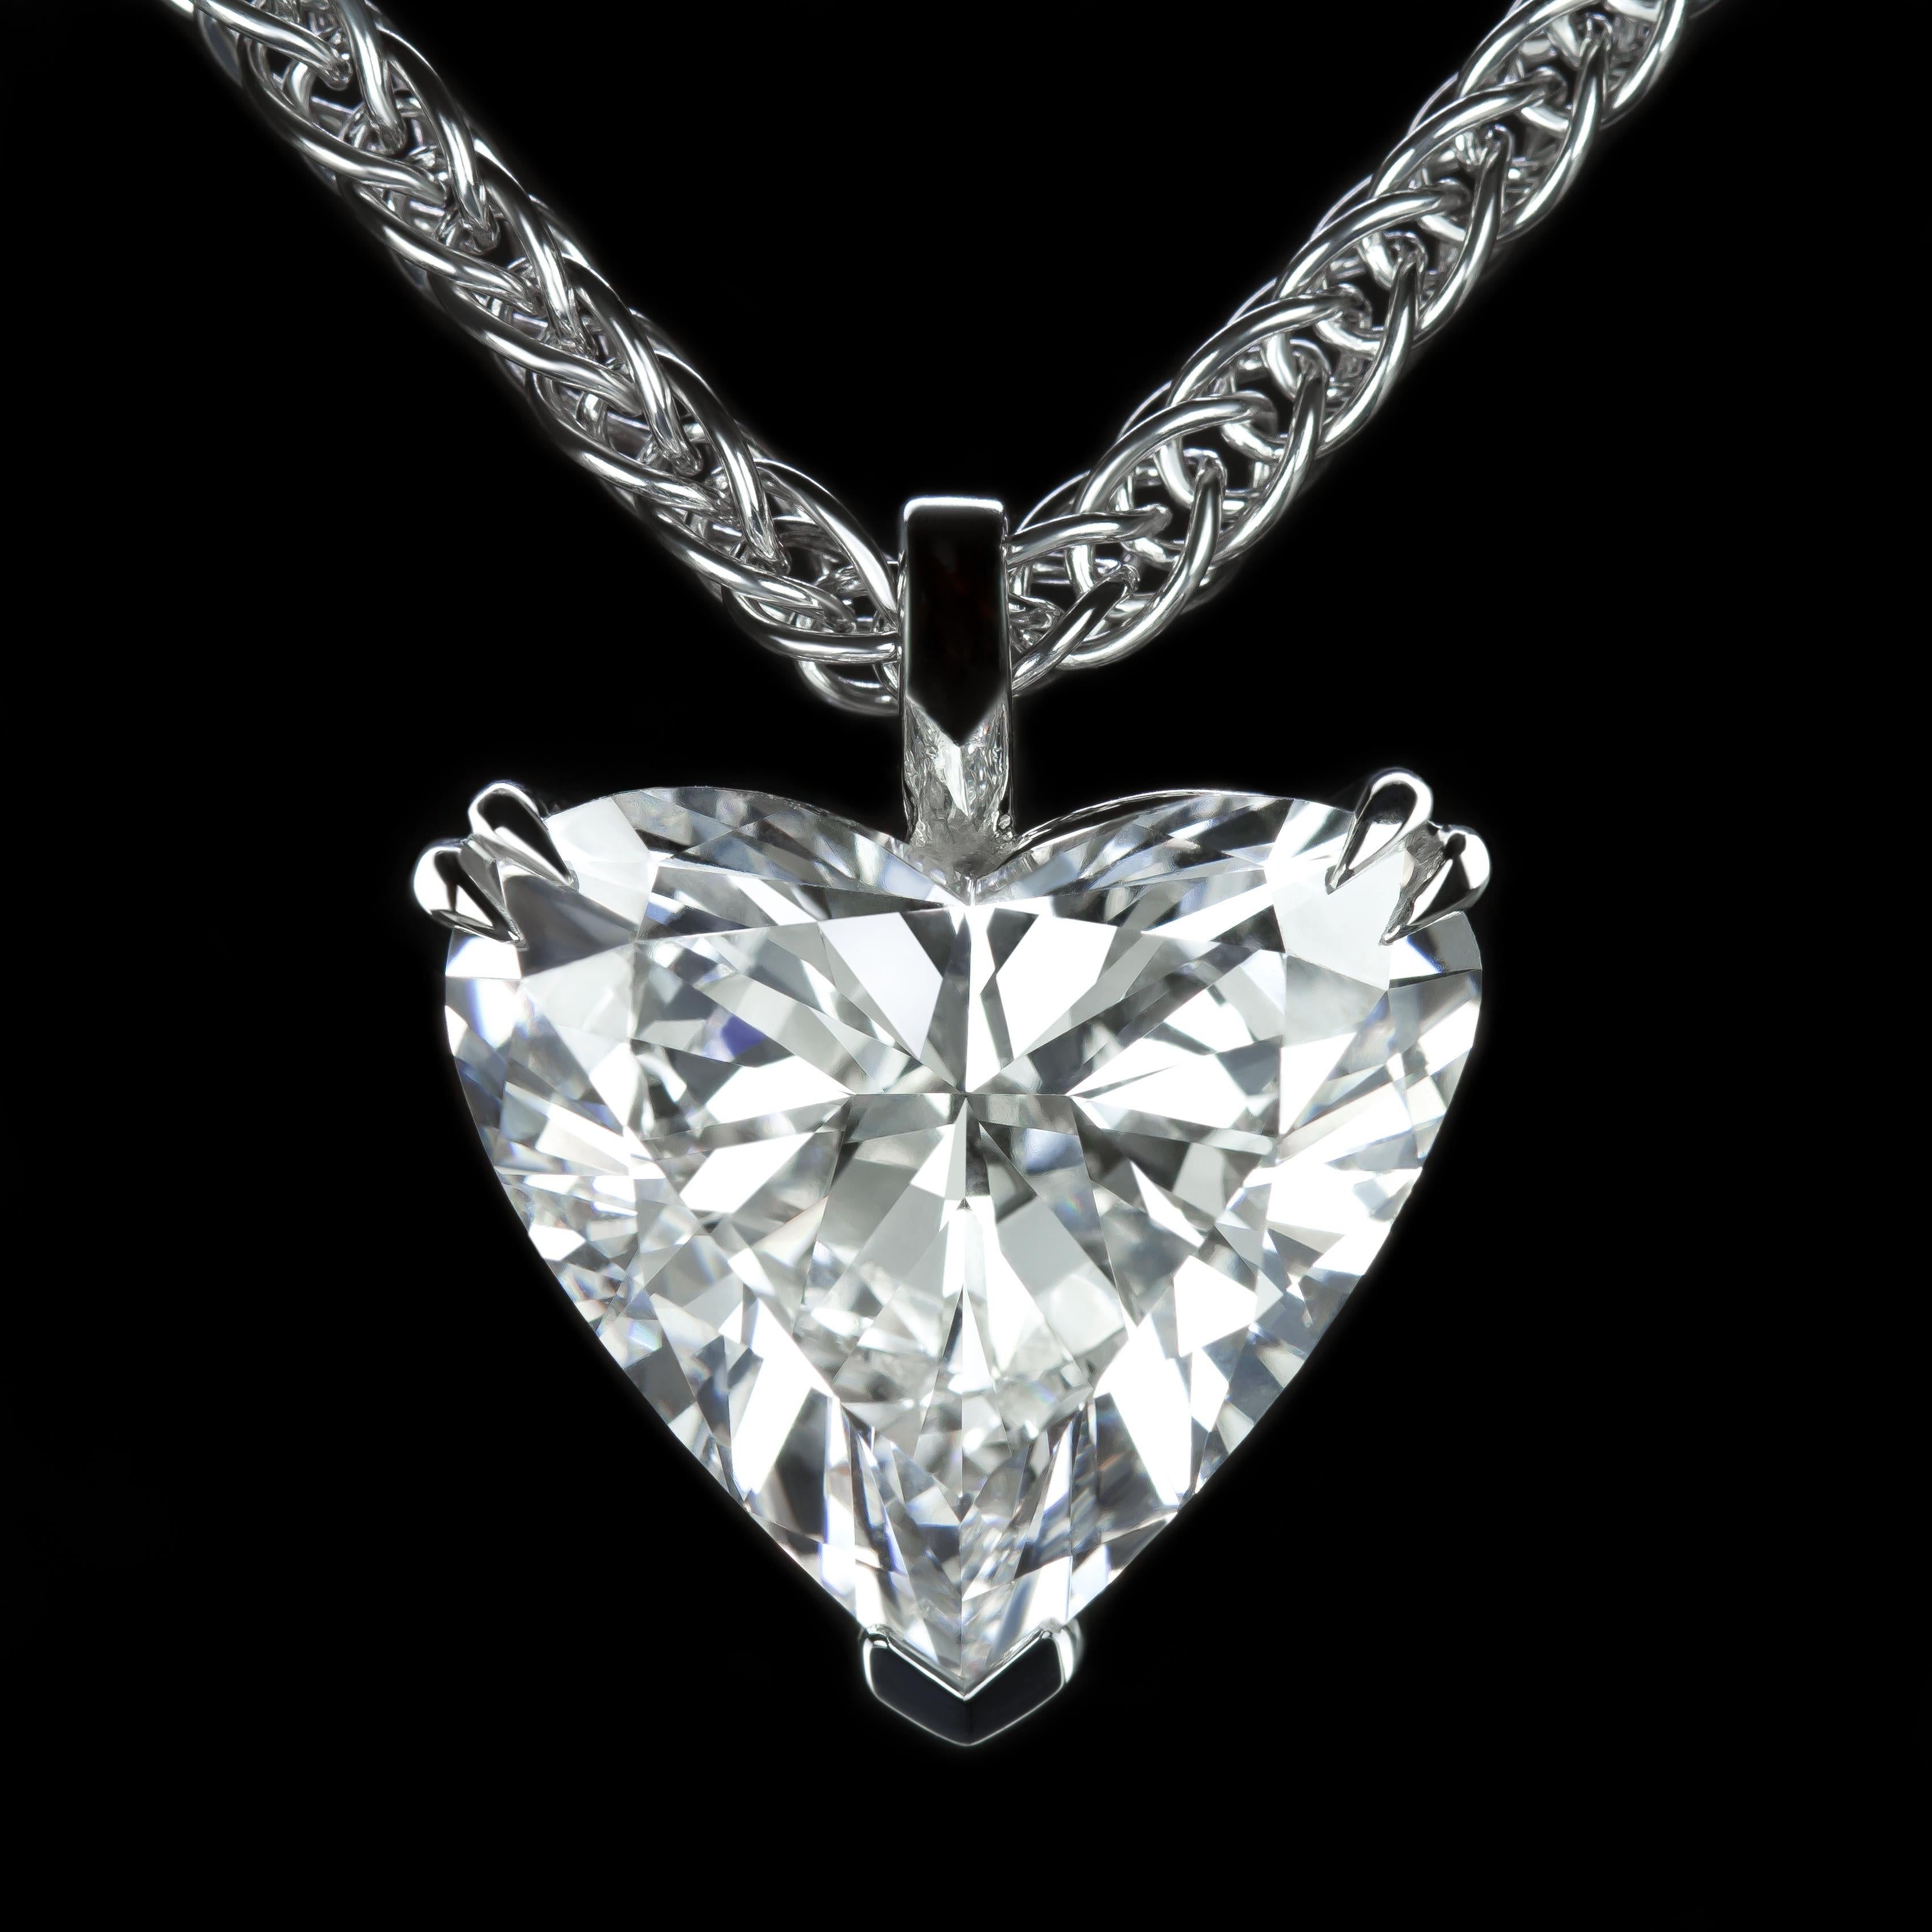 Ce magnifique collier en diamant en forme de cœur présente un gros diamant en forme de cœur pesant 10 carats. 

Le diamant est d'un blanc éclatant, complètement propre, et vibrant d'un éclat audacieux ! La monture en or blanc 18 carats est classique